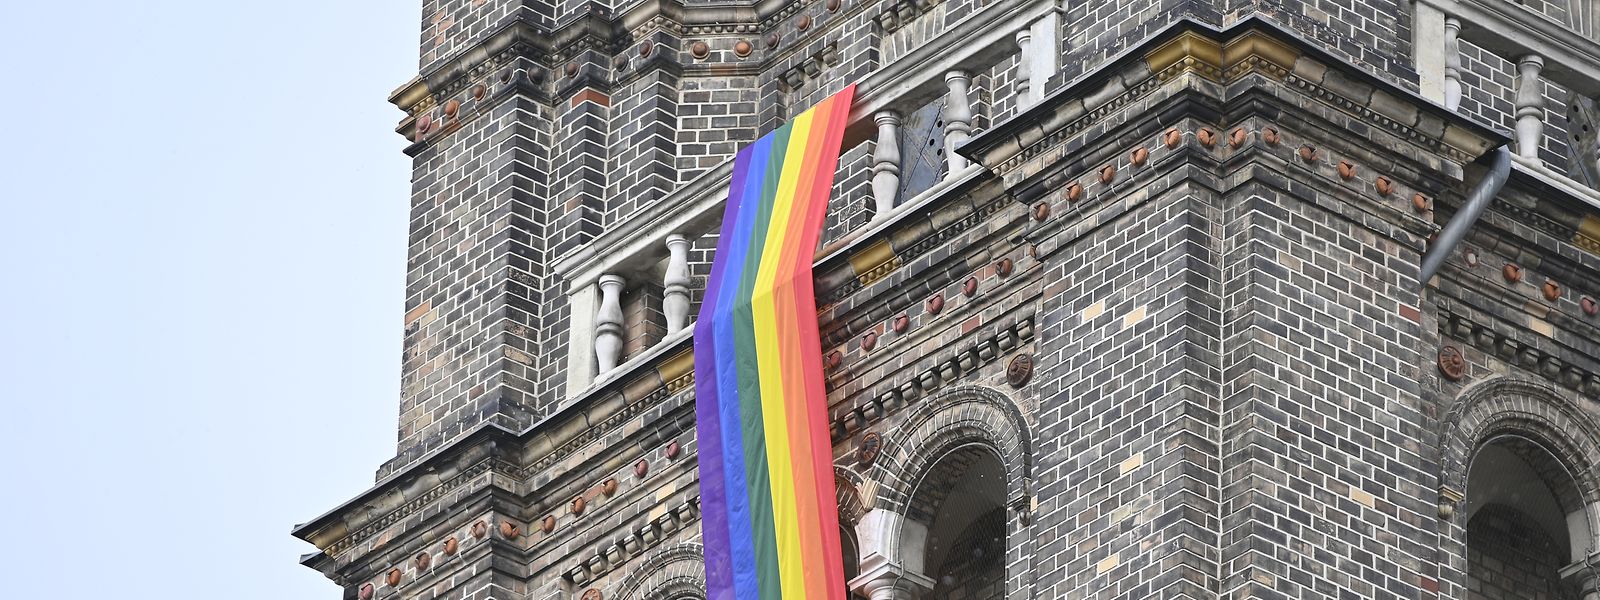 Aus Protest gegen das Nein der vatikanischen Glaubenskongregation zur Segnung homosexueller Partnerschaften wurde eine Regenbogenfahne an der Wiener Pfarrkirche Breitenfeld angebracht.